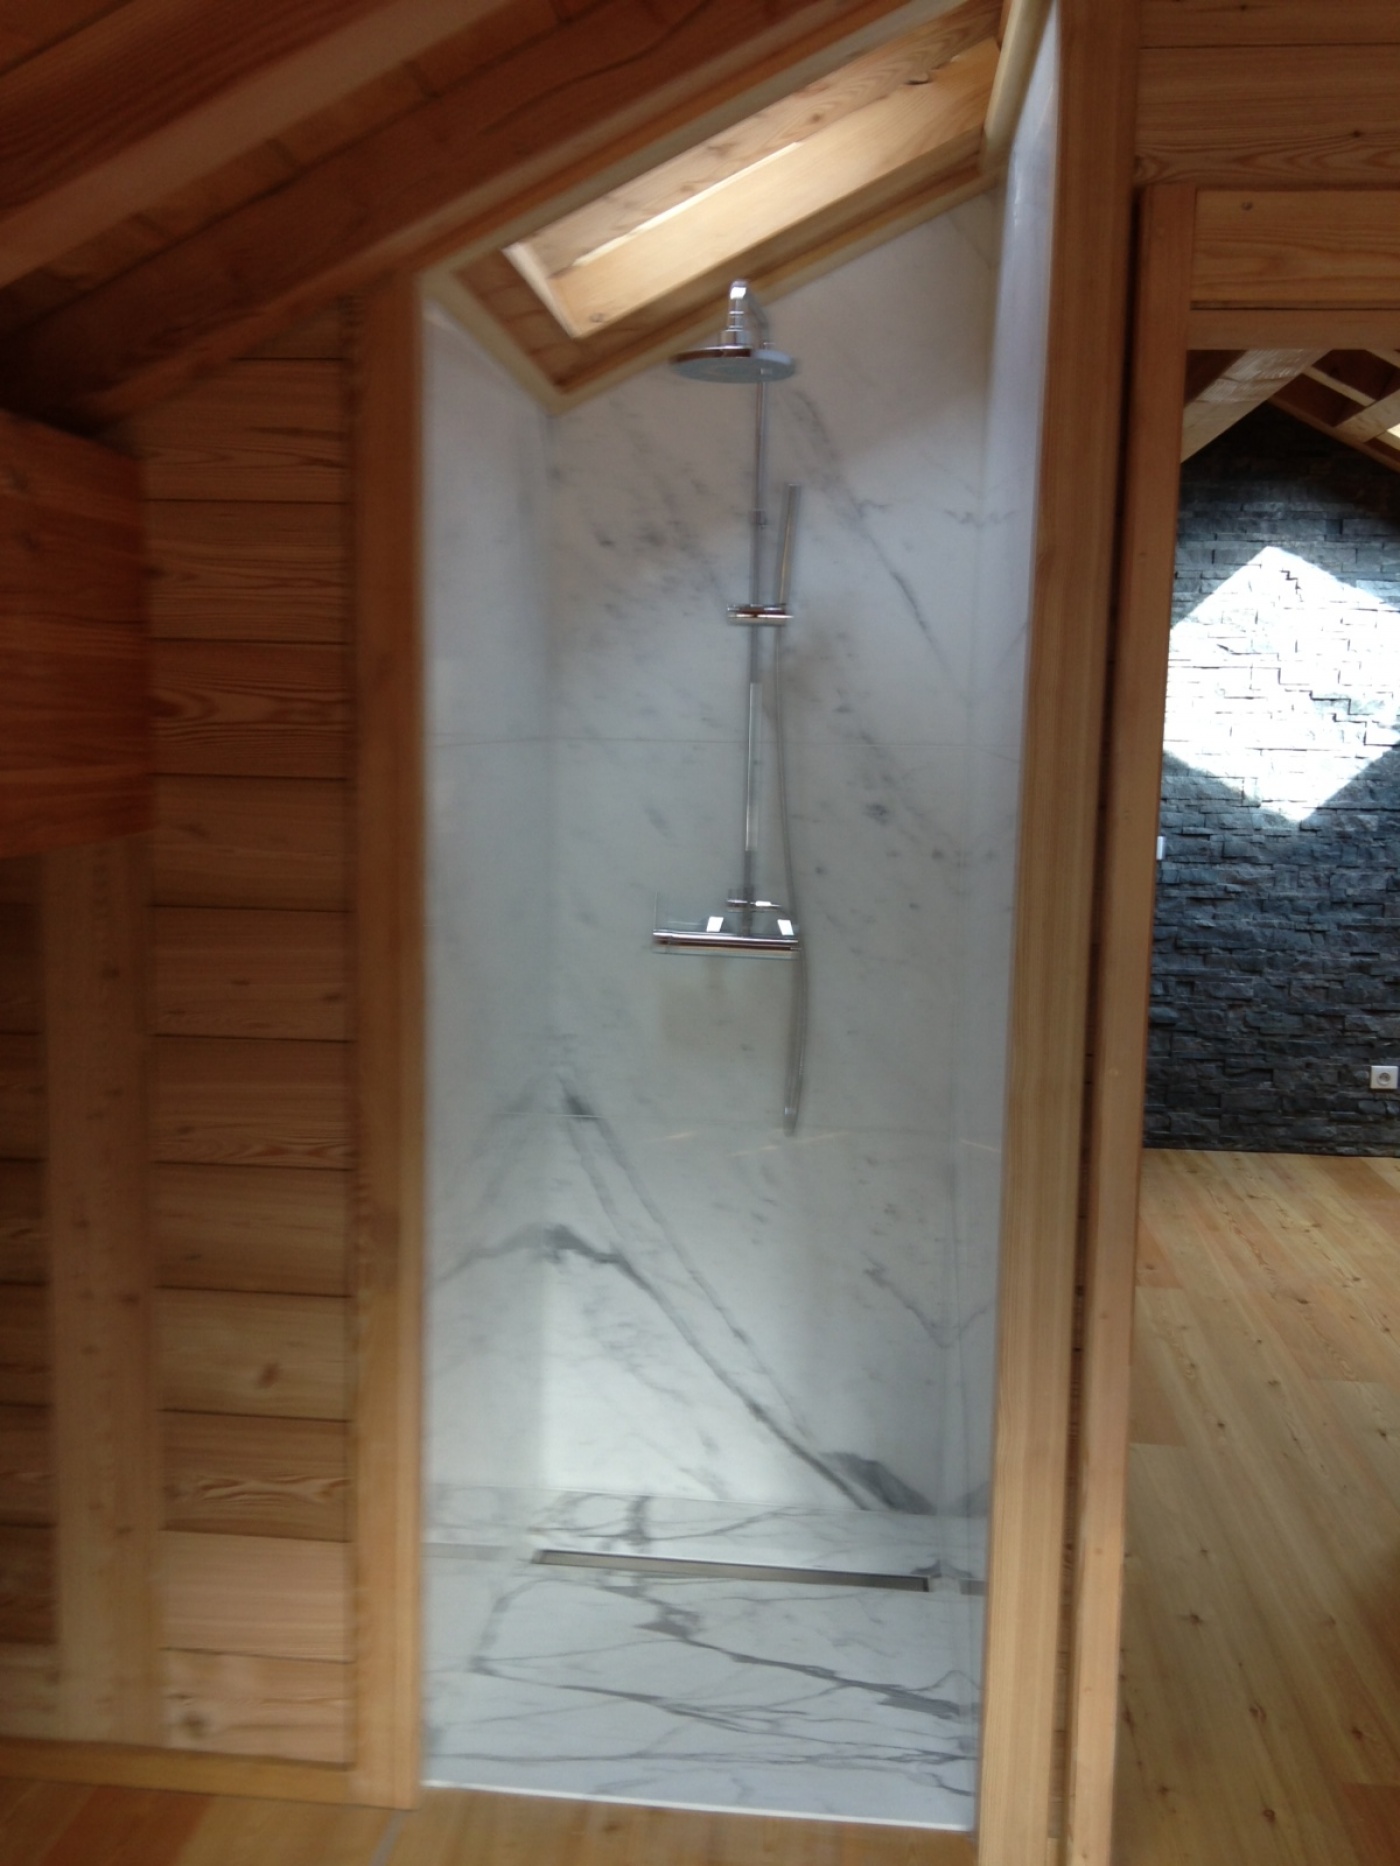 Granit Salle de bains avec murs, bac à douche, et vasque Bianco Statuario Extra.
Chantier à Montgenevre
